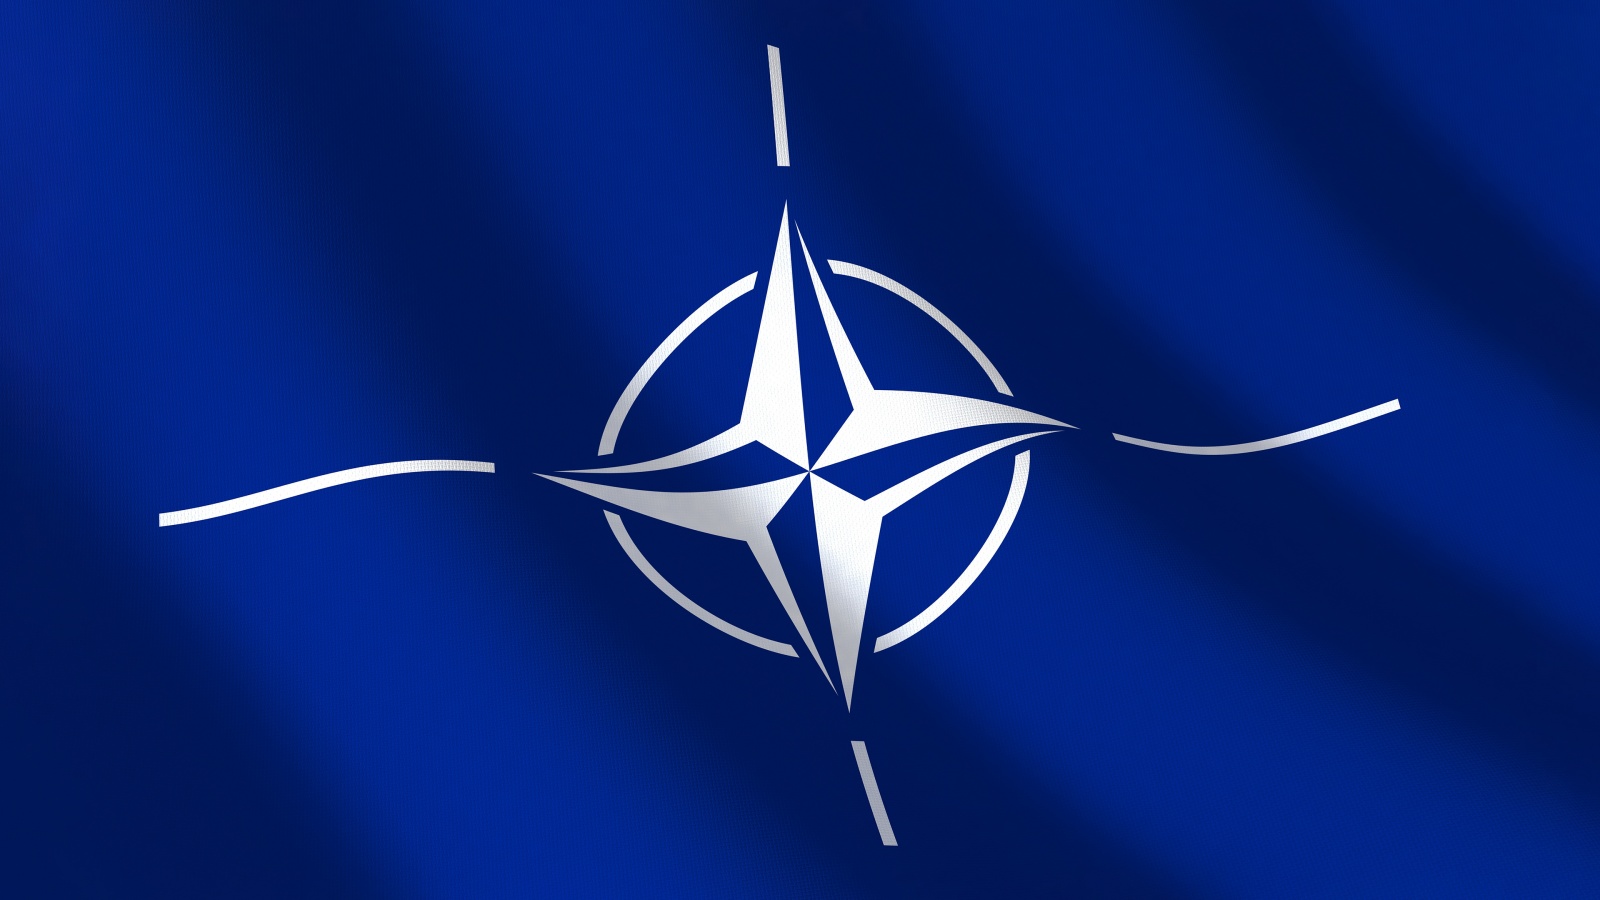 NATO a Desfasurat Exercitiul Multinational Swift Response in Macedonia de Nord